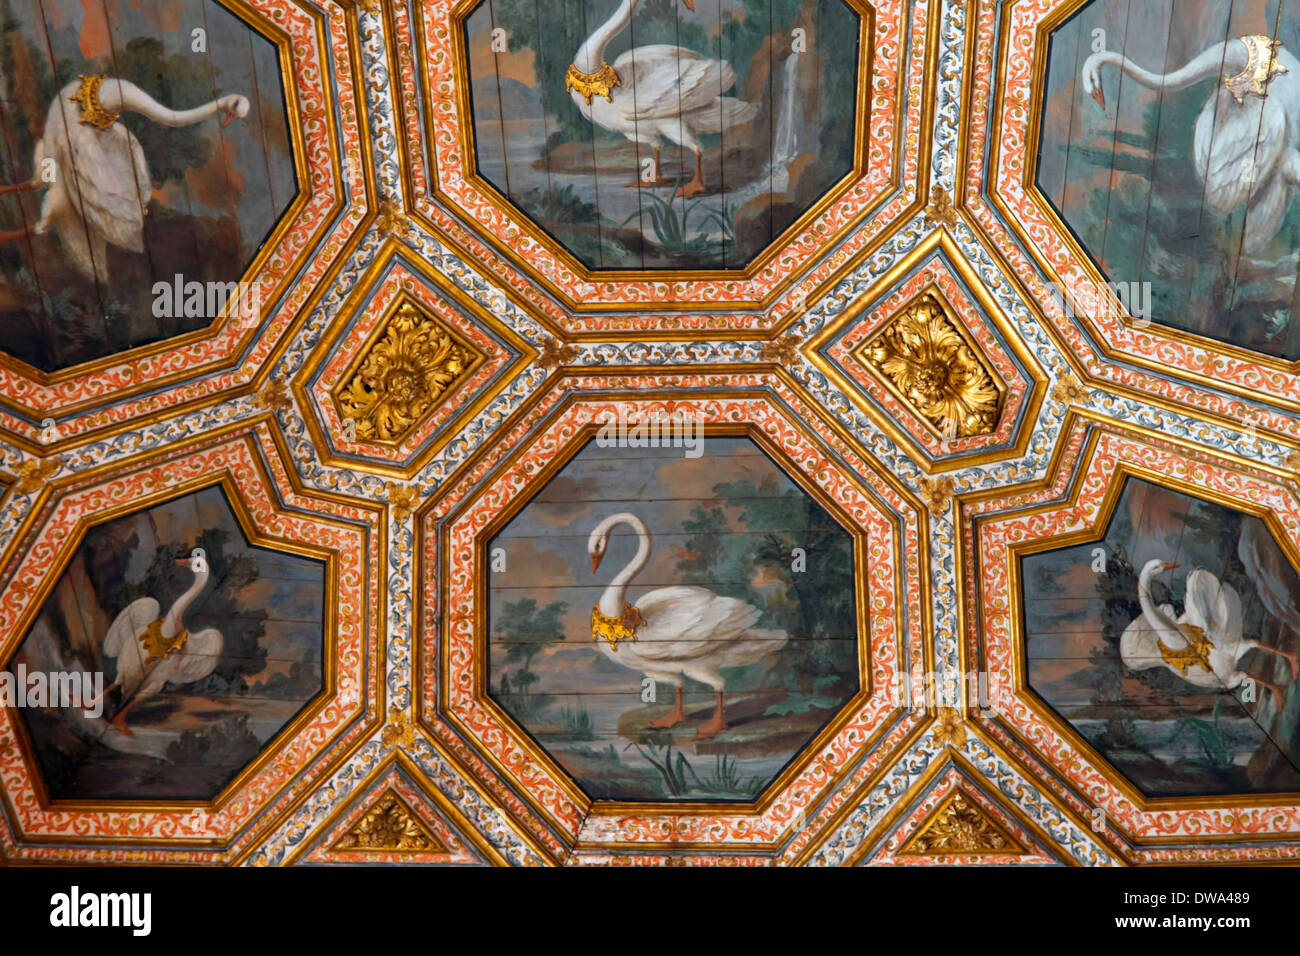 Sala dos Cisnes ou Swan Room nommé d'après les cygnes peint dans le panneau octogonal du plafond, Palais National de Sintra. Banque D'Images